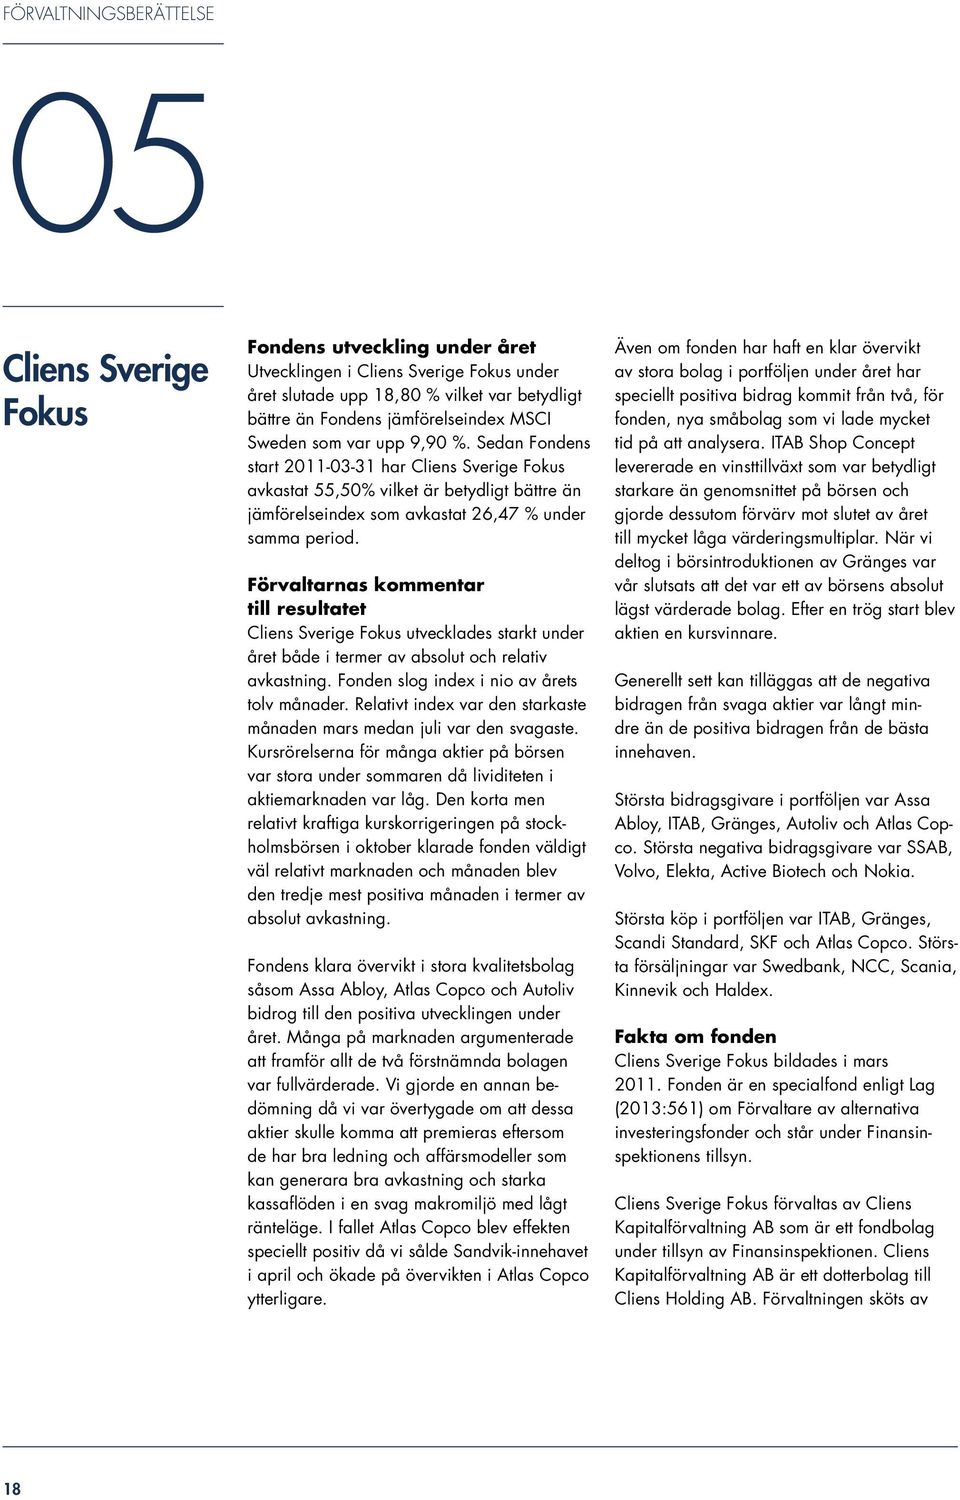 Förvaltarnas kommentar till resultatet Cliens Sverige Fokus utvecklades starkt under året både i termer av absolut och relativ avkastning. Fonden slog index i nio av årets tolv månader.